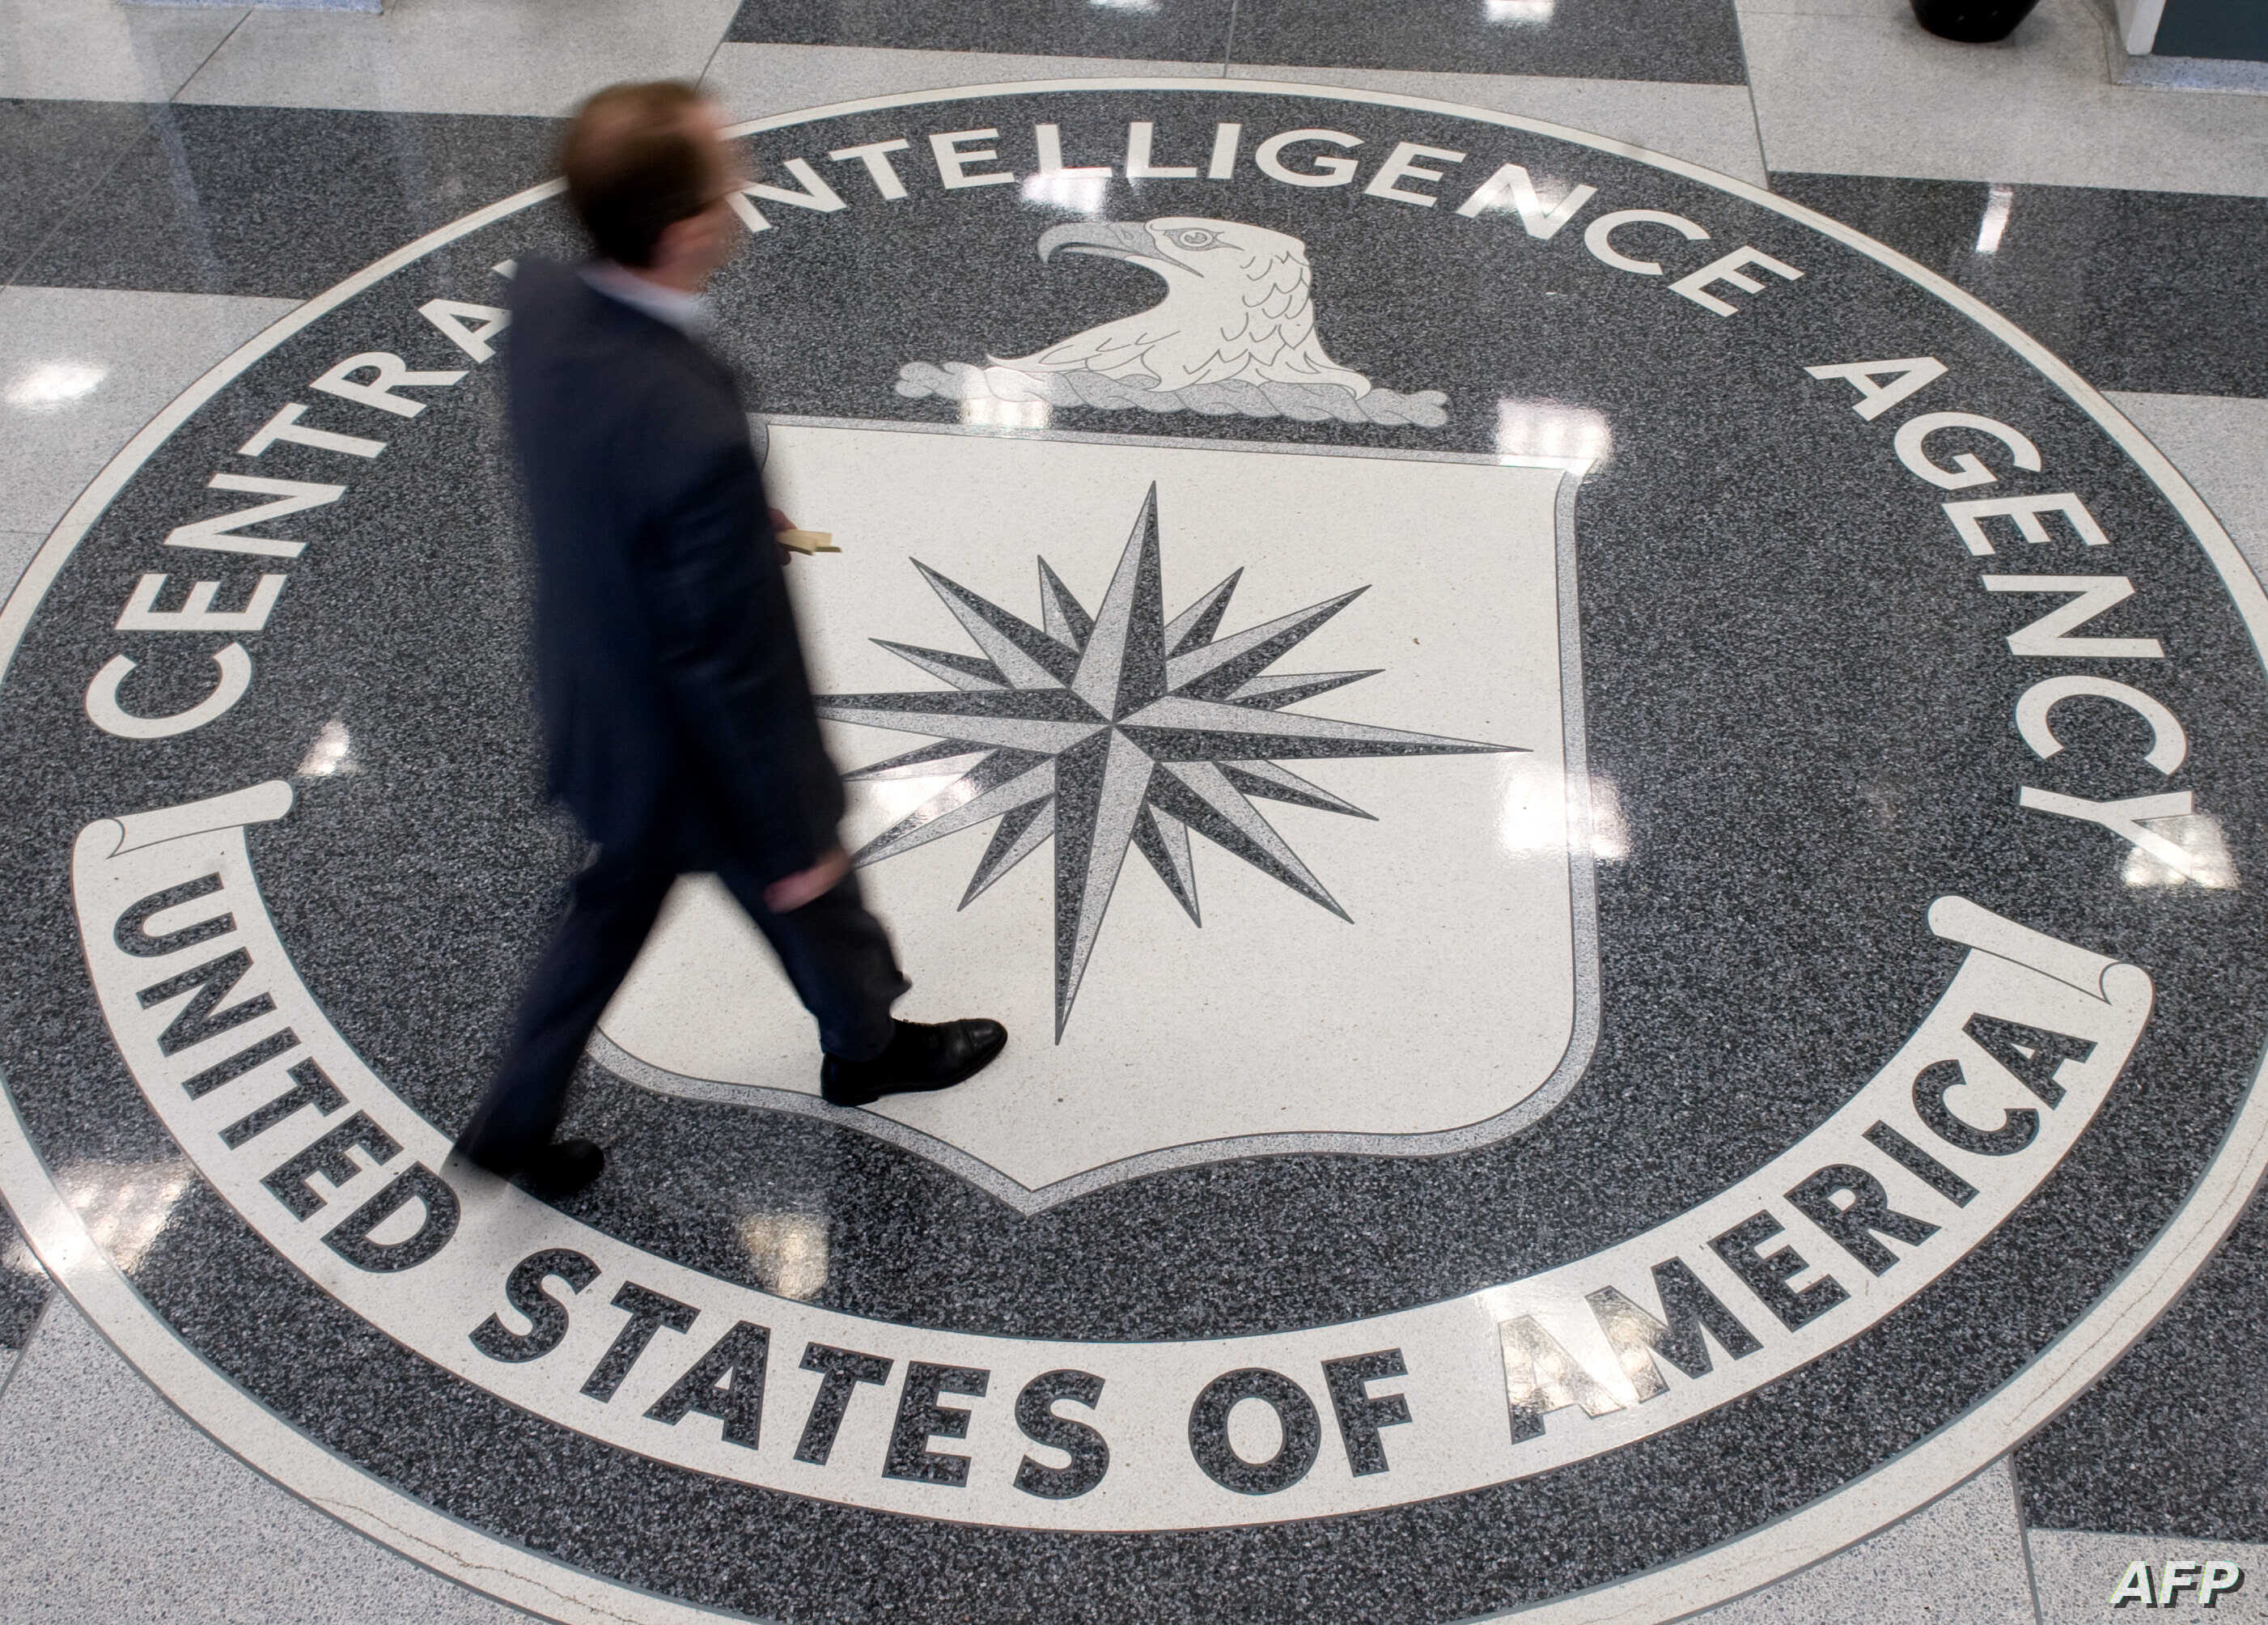 Έξι συναρπαστικές αλήθειες που δεν γνωρίζατε για τη CIA